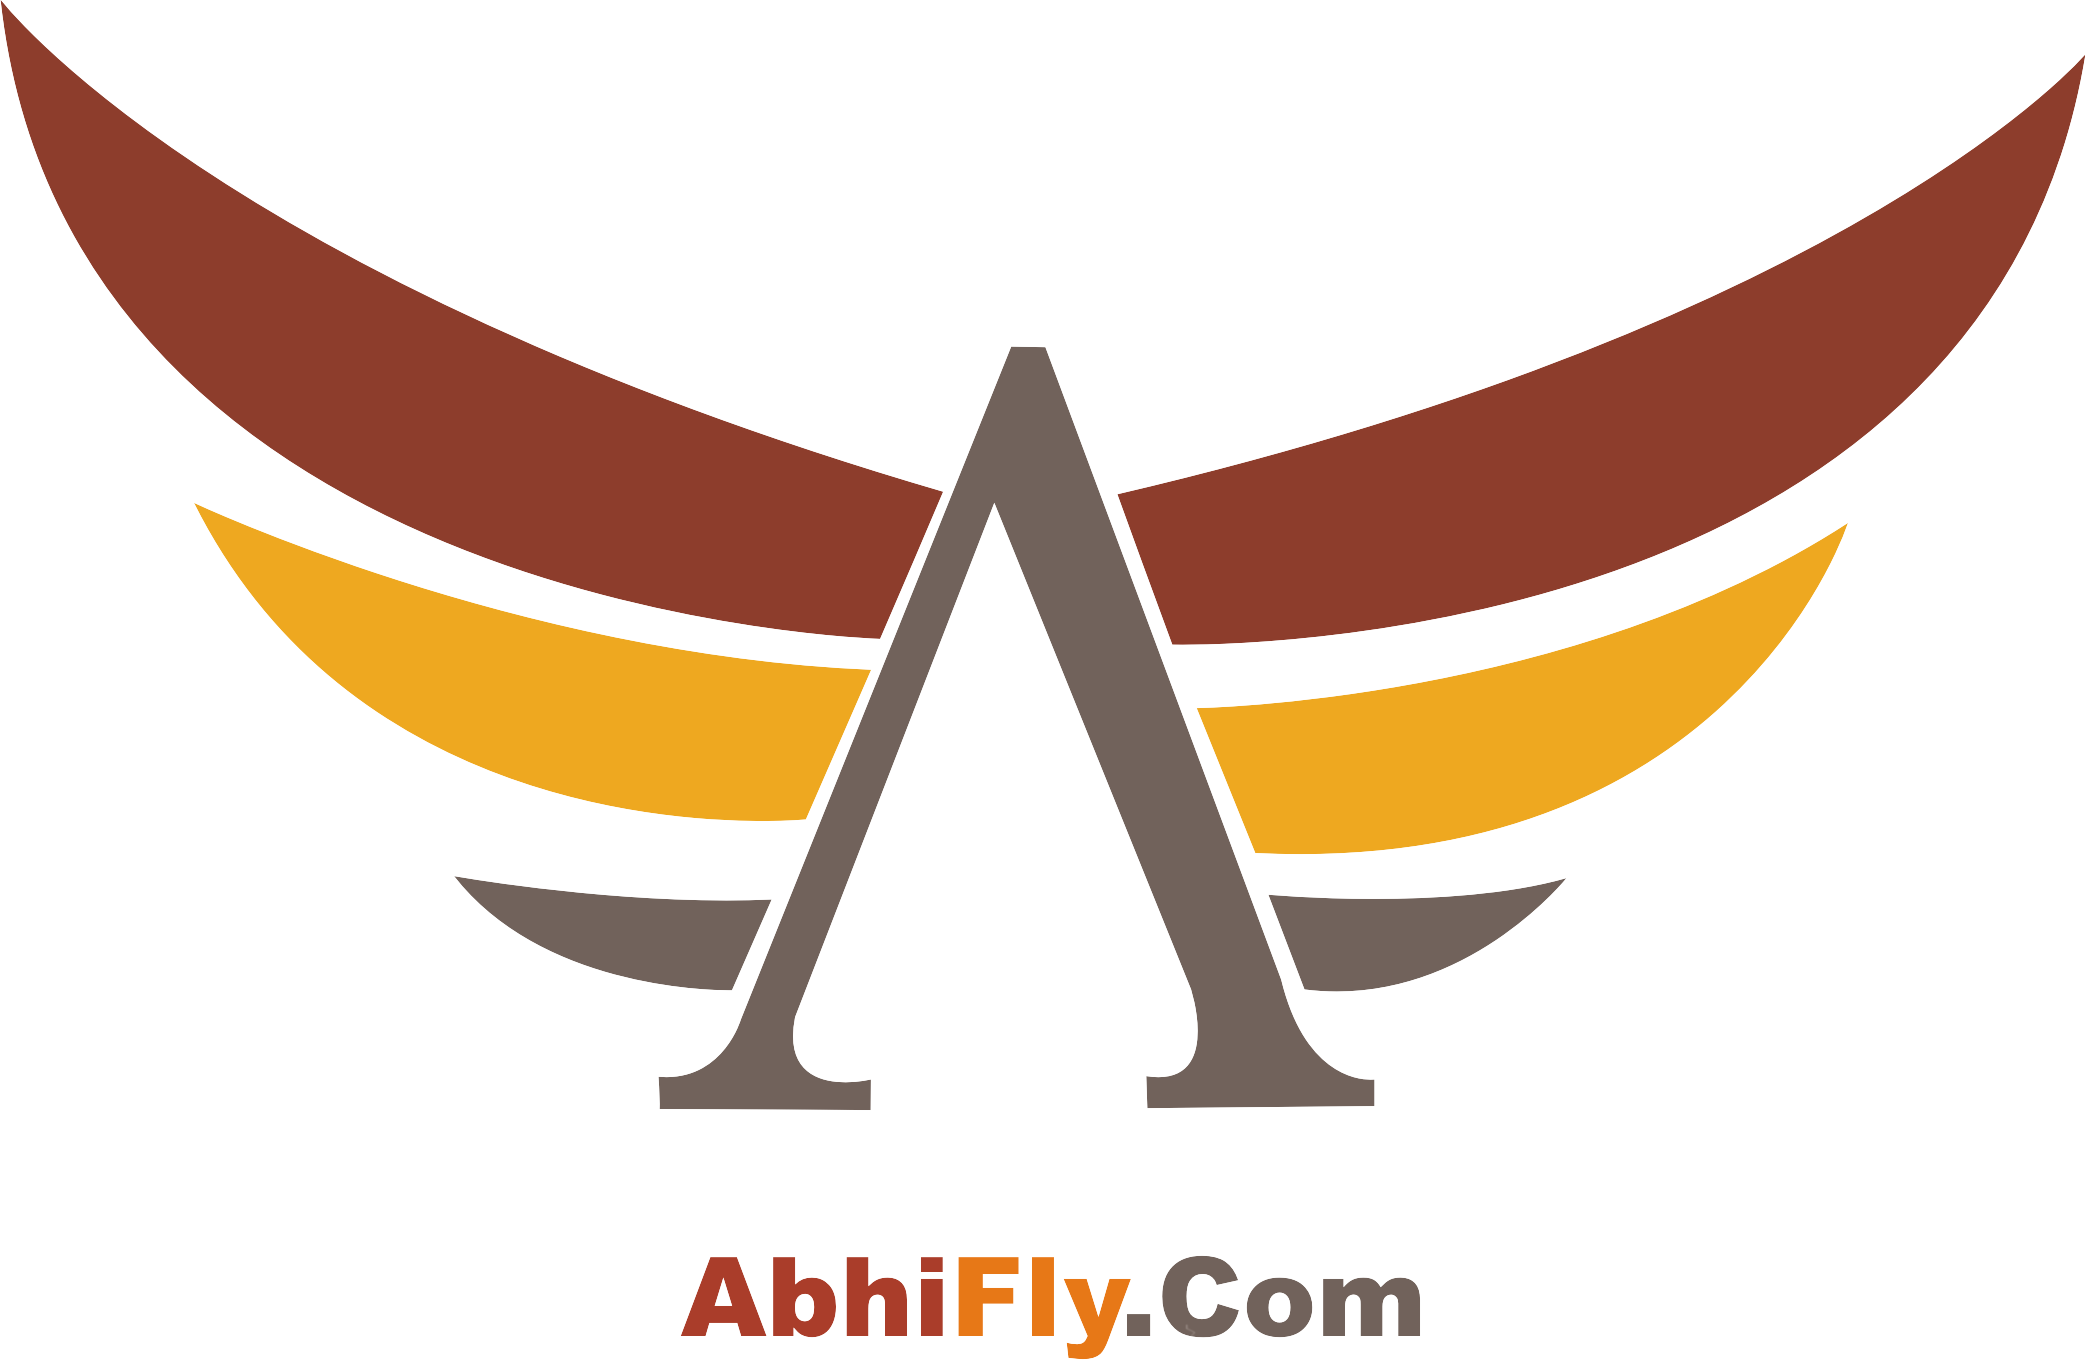 Abhifly.com